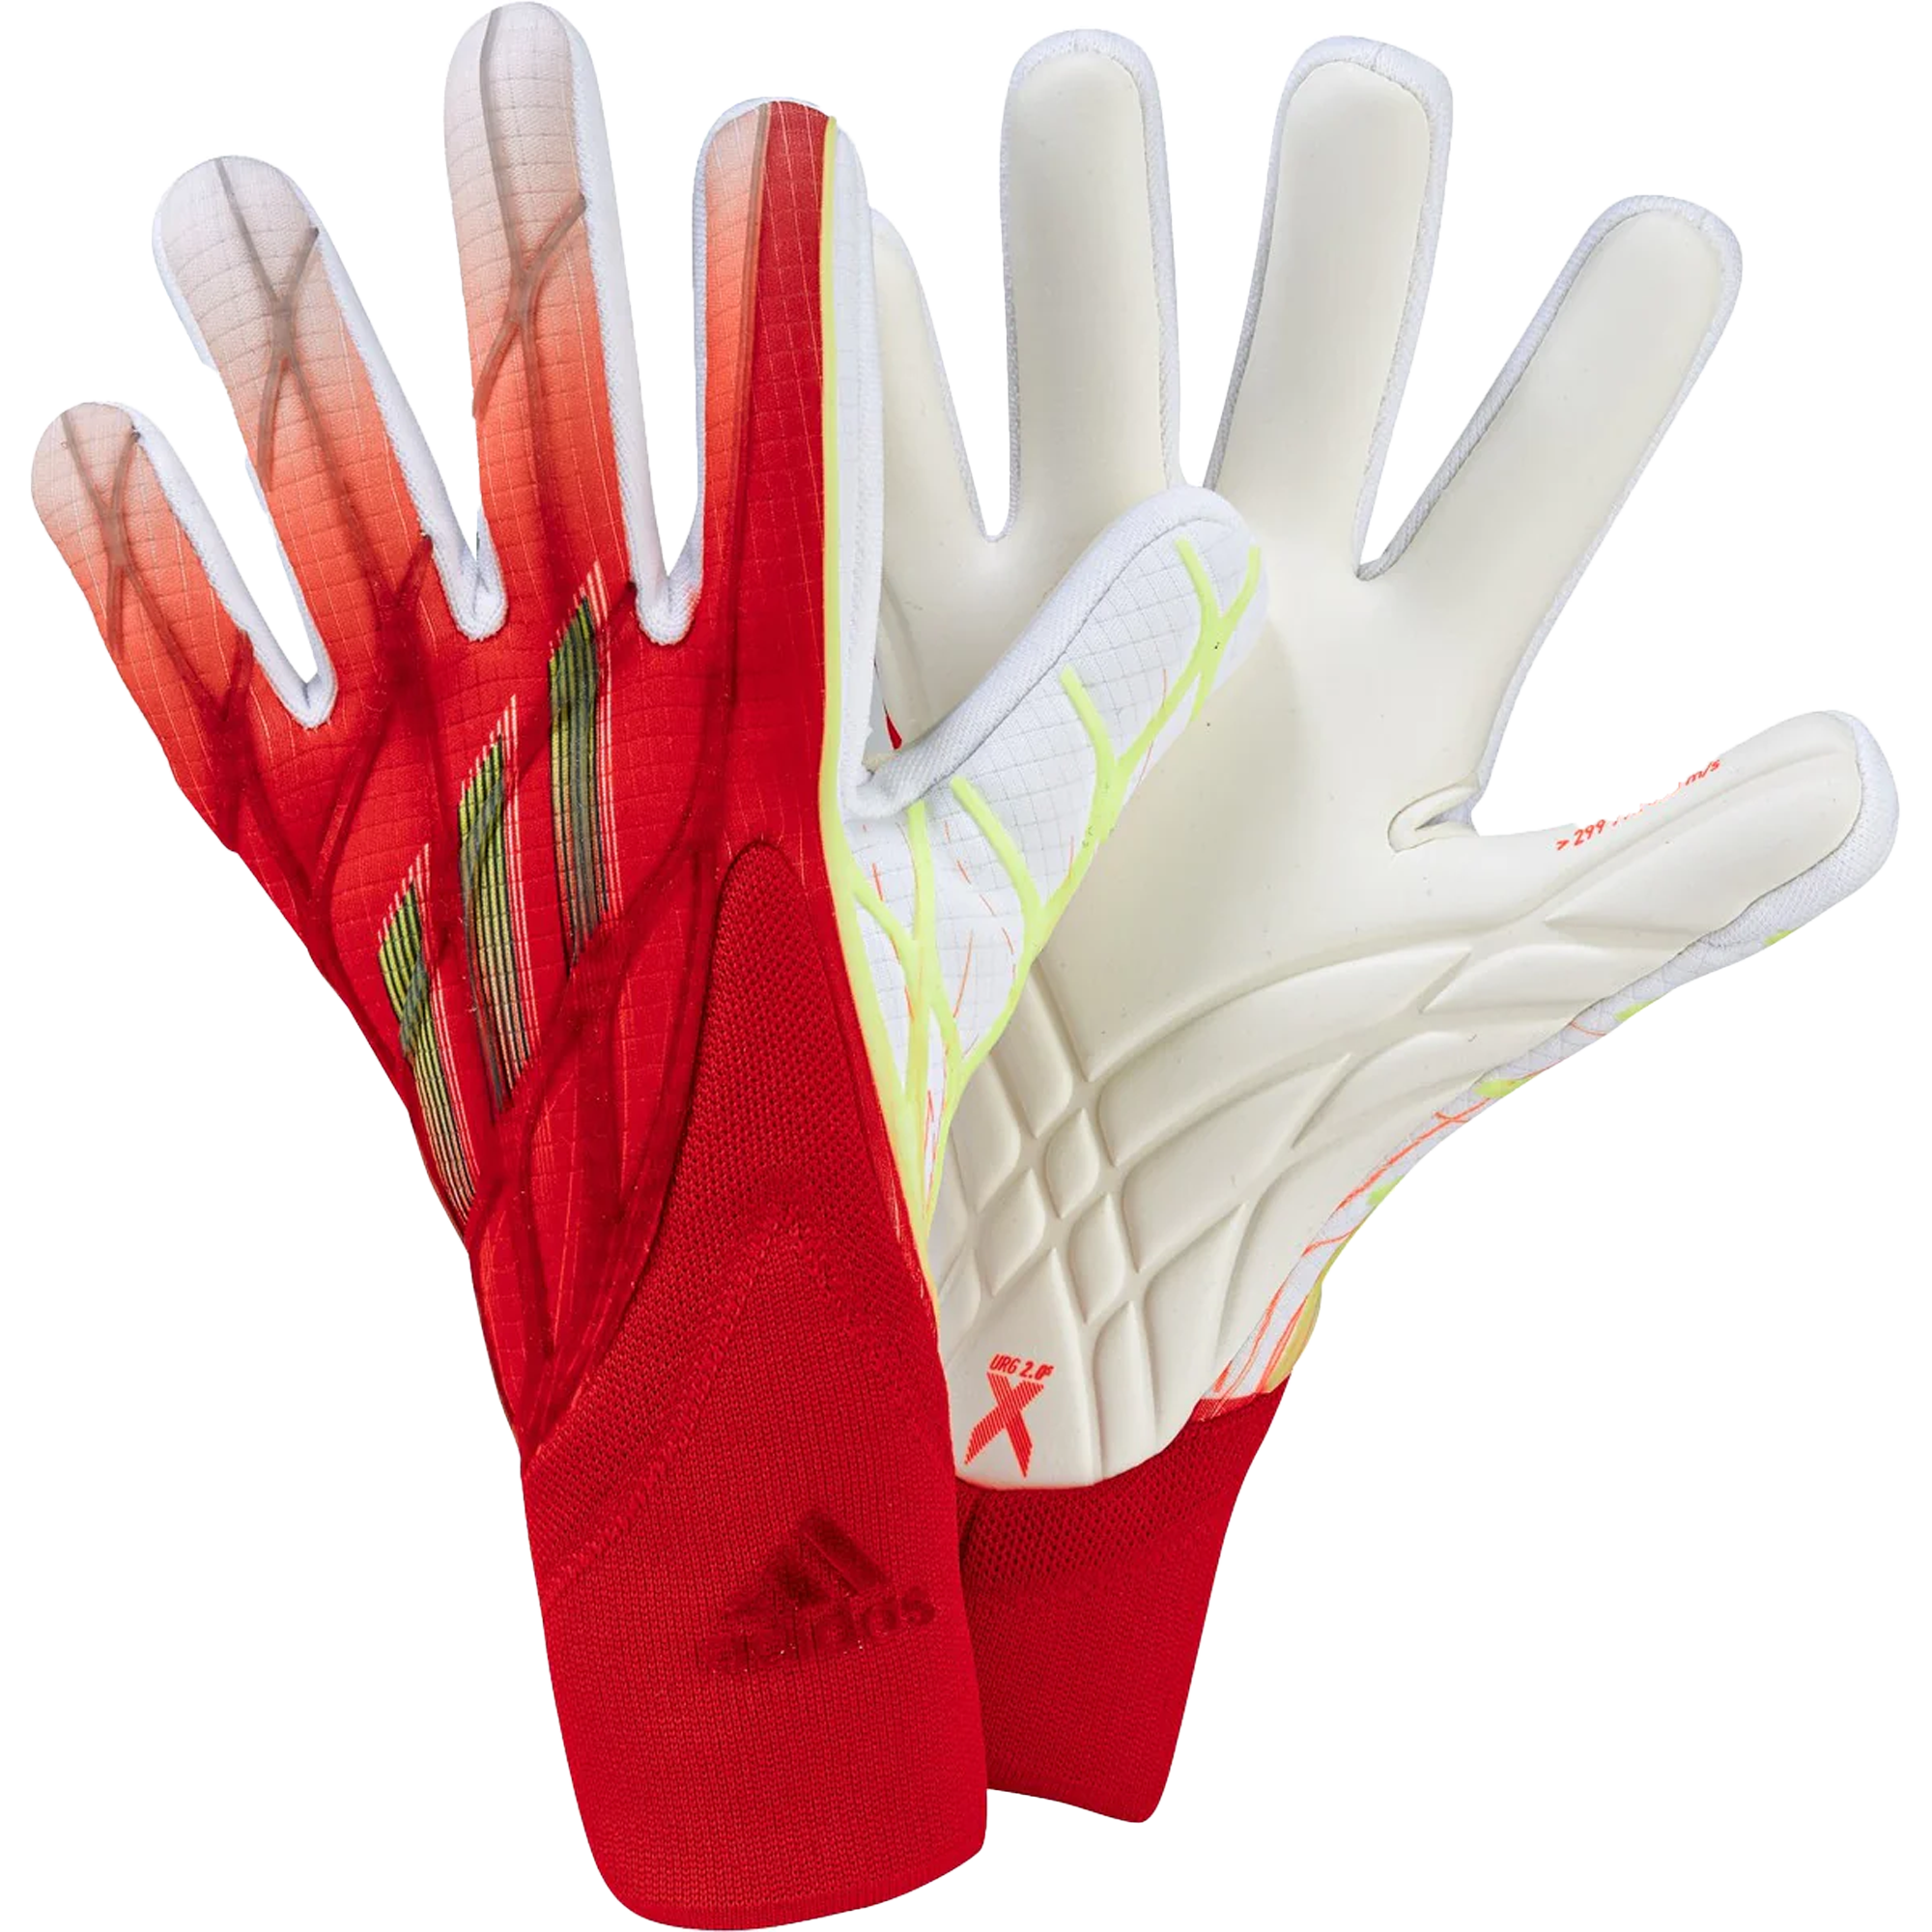 stefanssoccer.com:Adidas X Pro Glove -